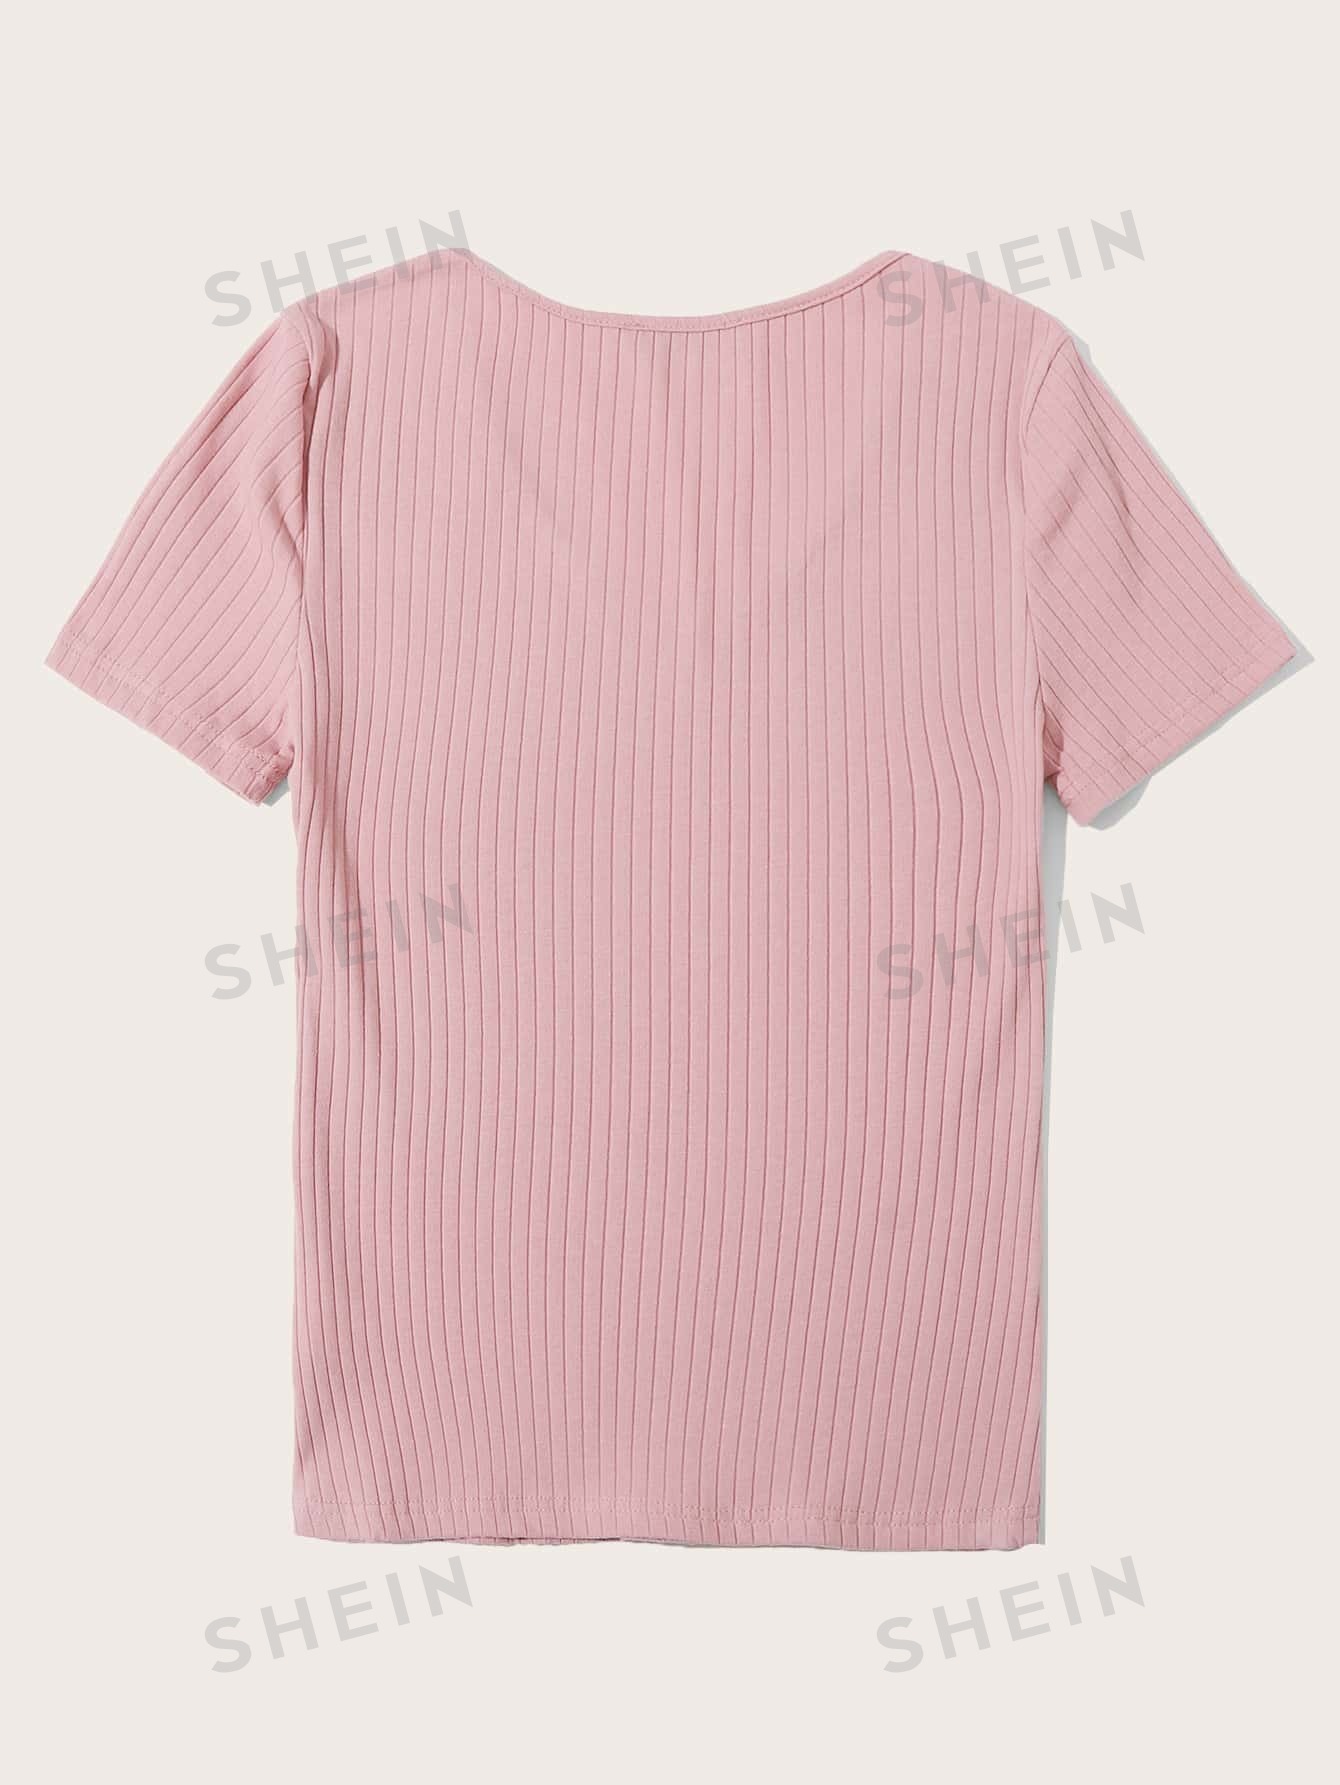 SHEIN Essnce однотонная повседневная трикотажная футболка в рубчик с короткими рукавами, розовый